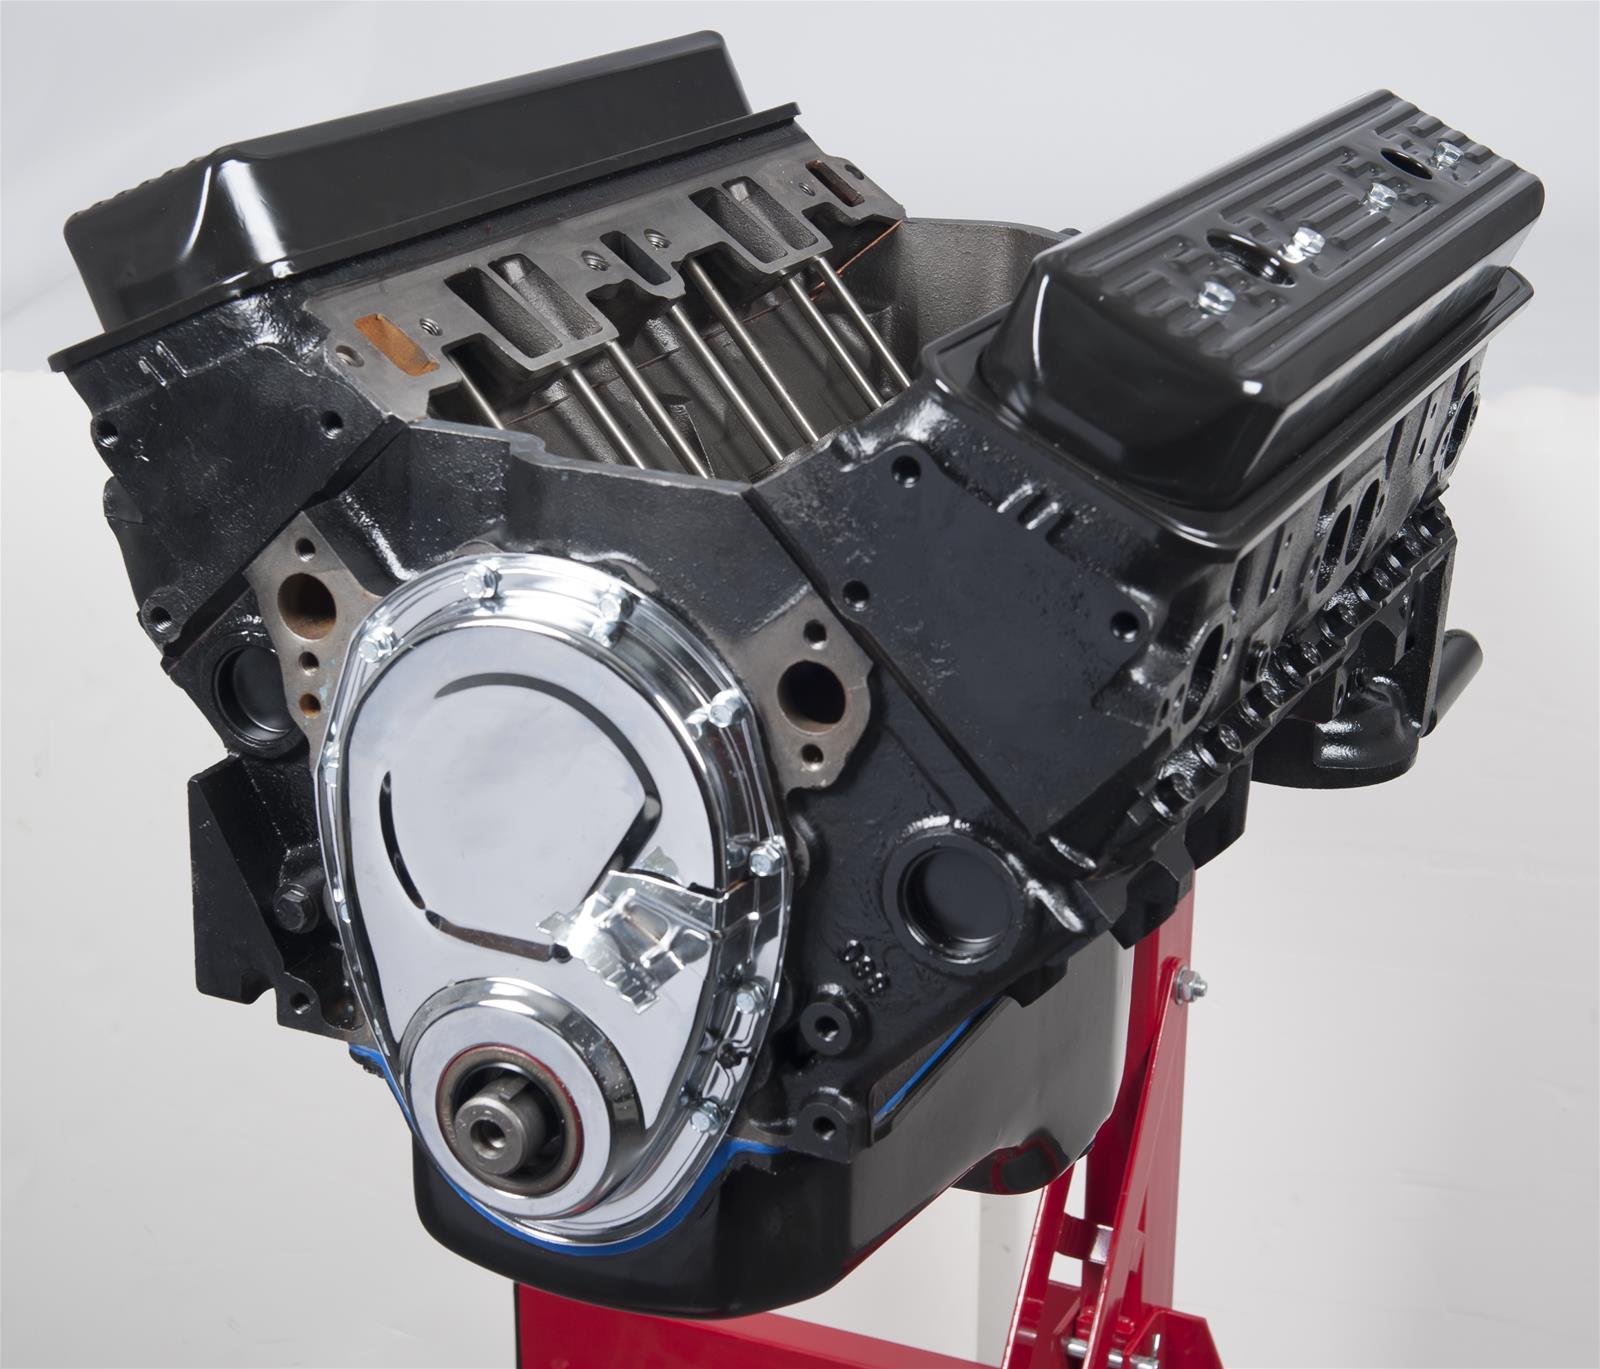 What companies sell rebuilt Kawasaki engines?